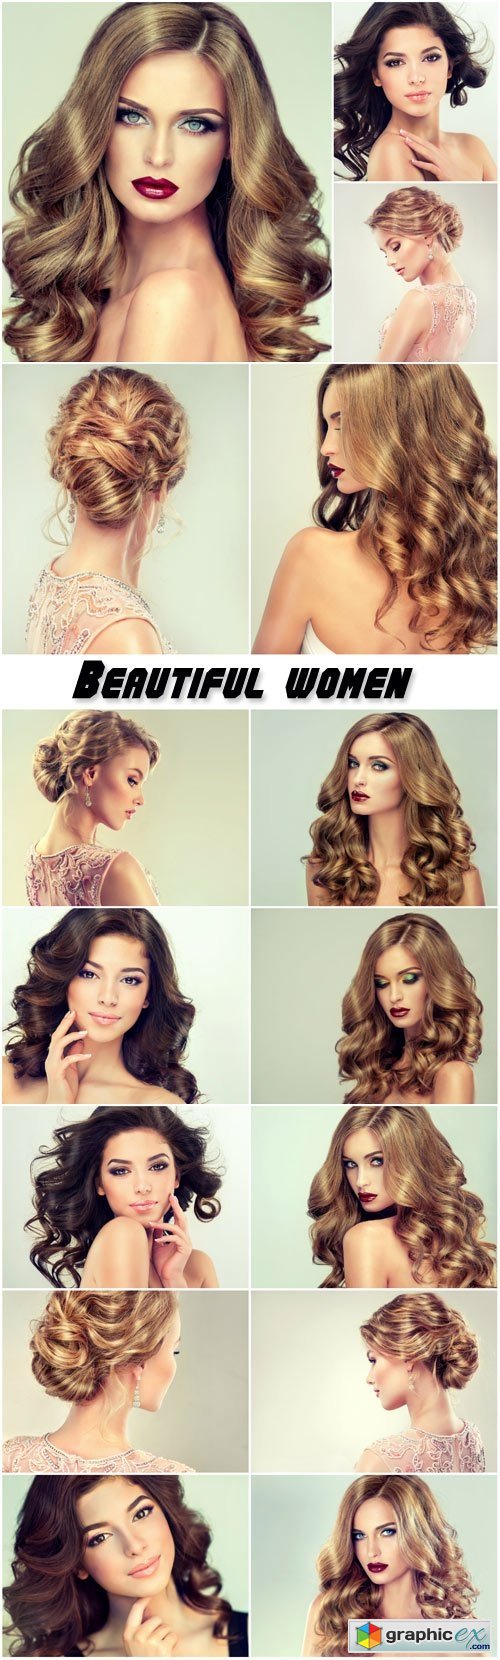 Beautiful women, trendy hairstyles, make-up